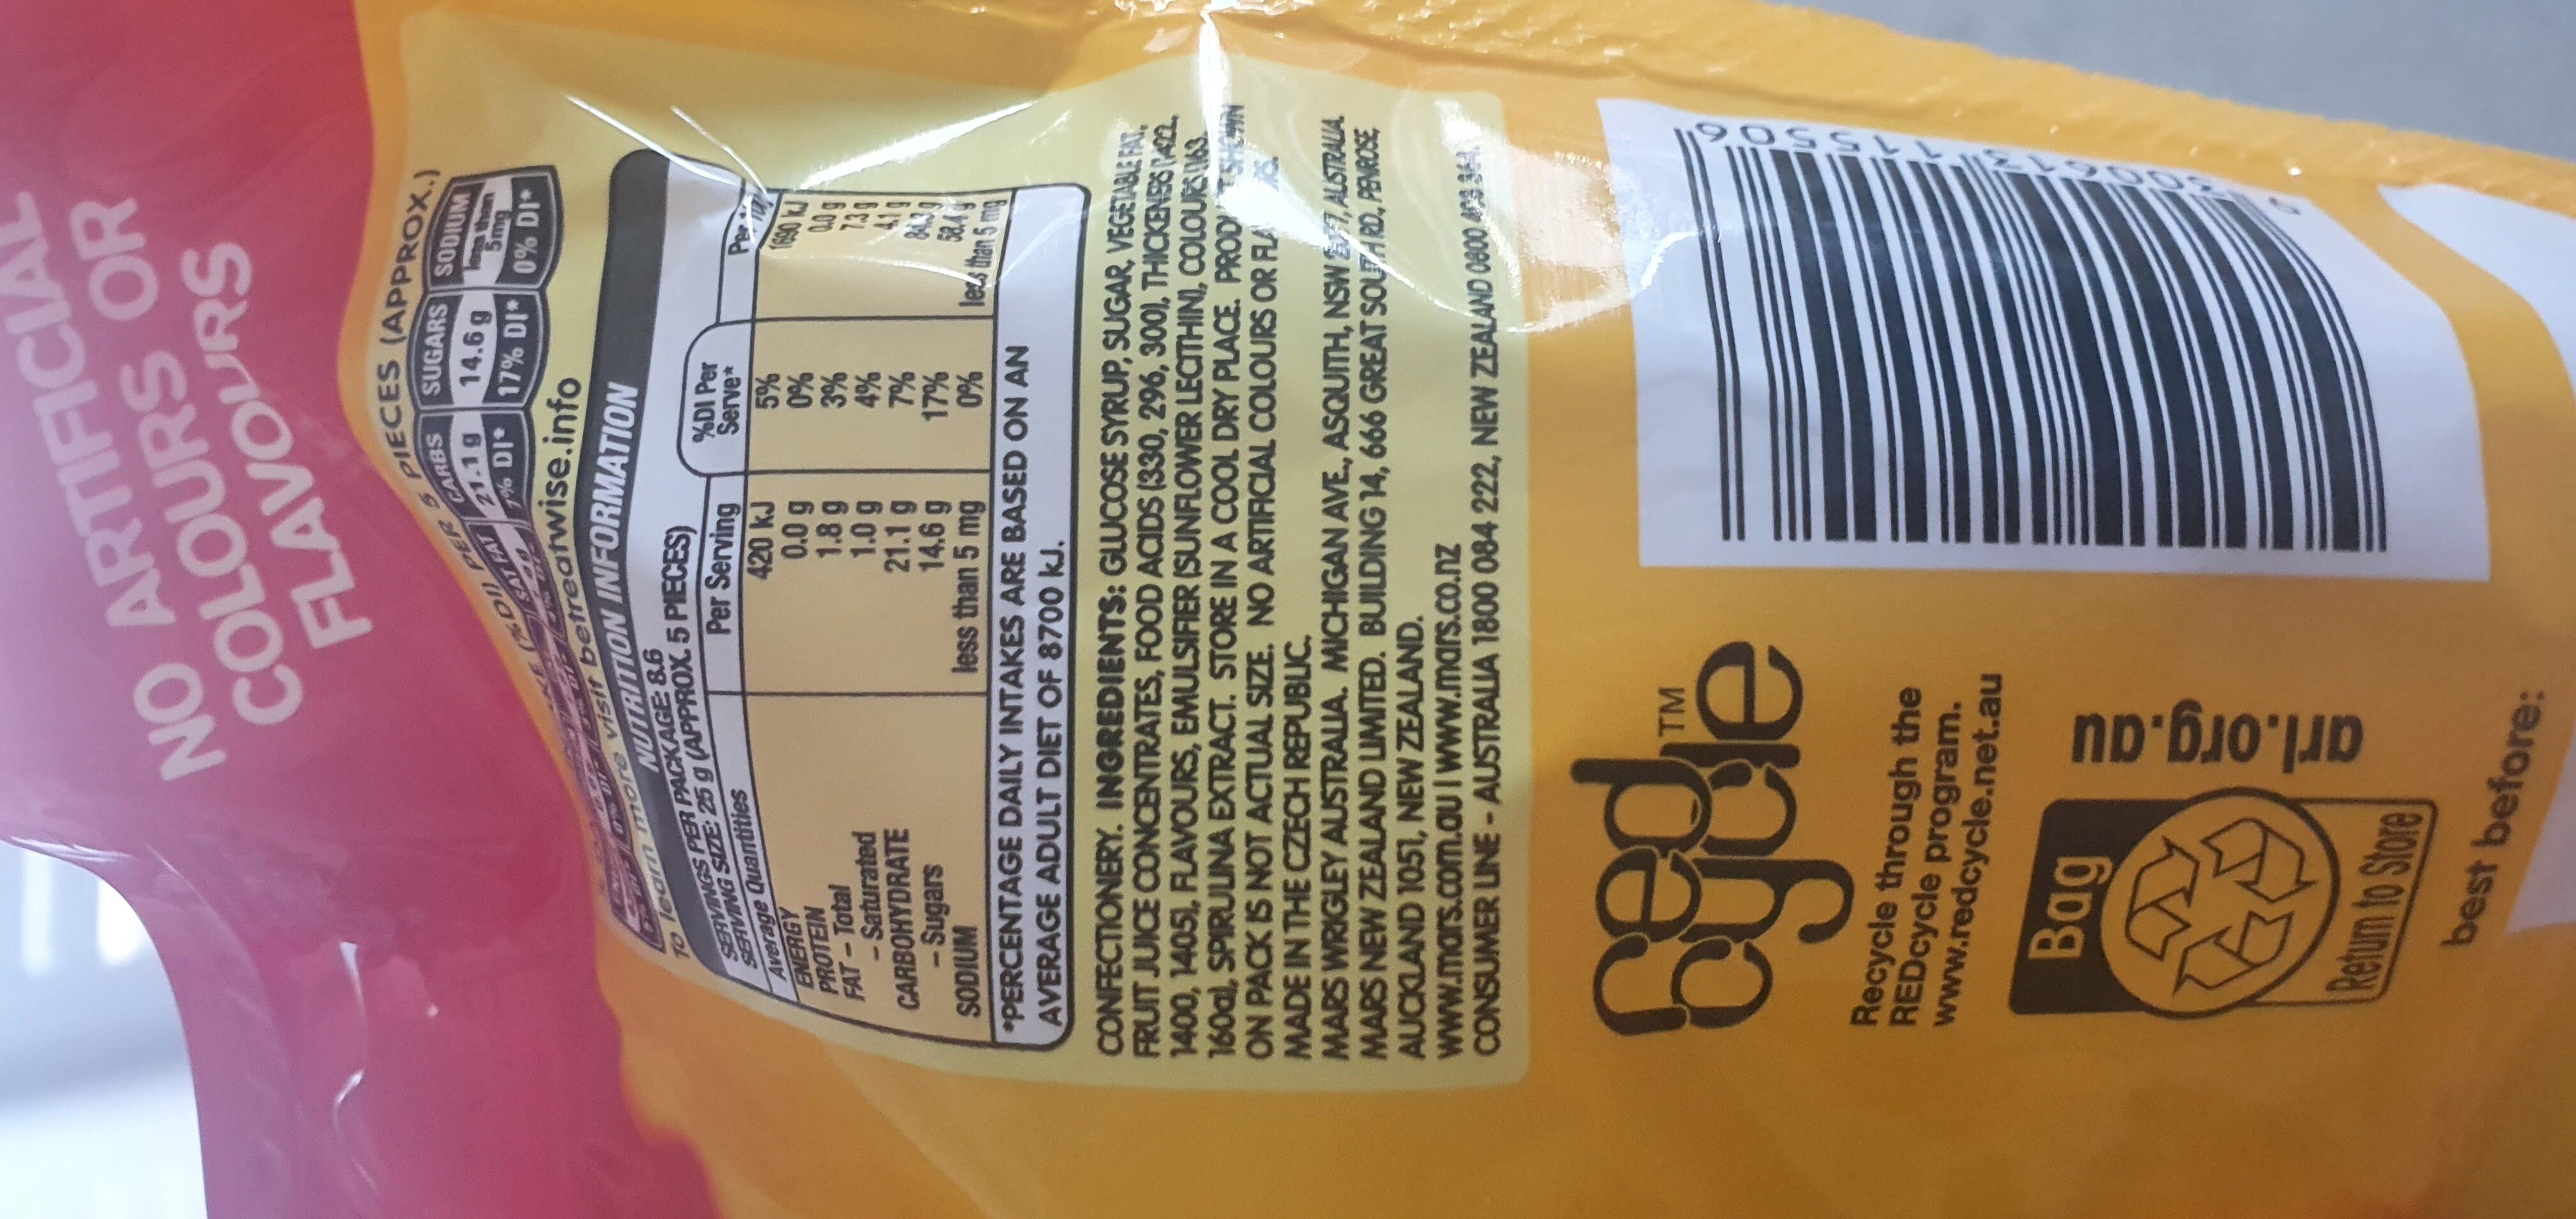 starburst chews fruit flavour - Ingredients